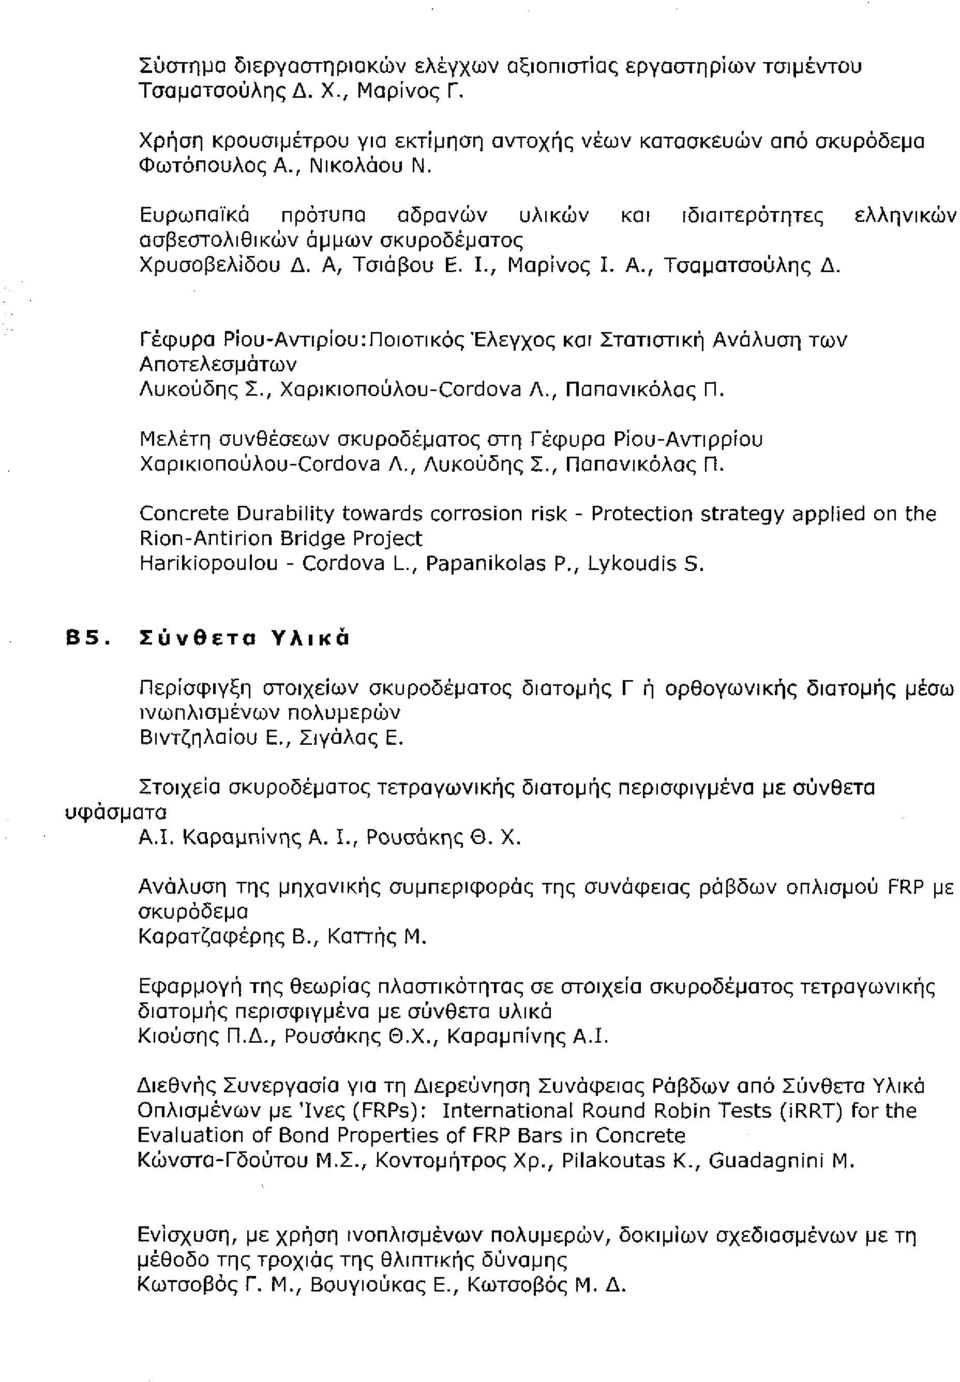 29 Ευρωπαϊκά πρότυπα αδρανών υλικών και ιδιαιτερότητες ελληνικών ασβεστολιθικών άμμων σκυροδέματος Χρυσοβελίδου Δ. Α, Τσιάβου Ε. Ι., Μαρίνος Ι. Α., Τσαματσοϋλης Δ., σελ. 288- Β4.